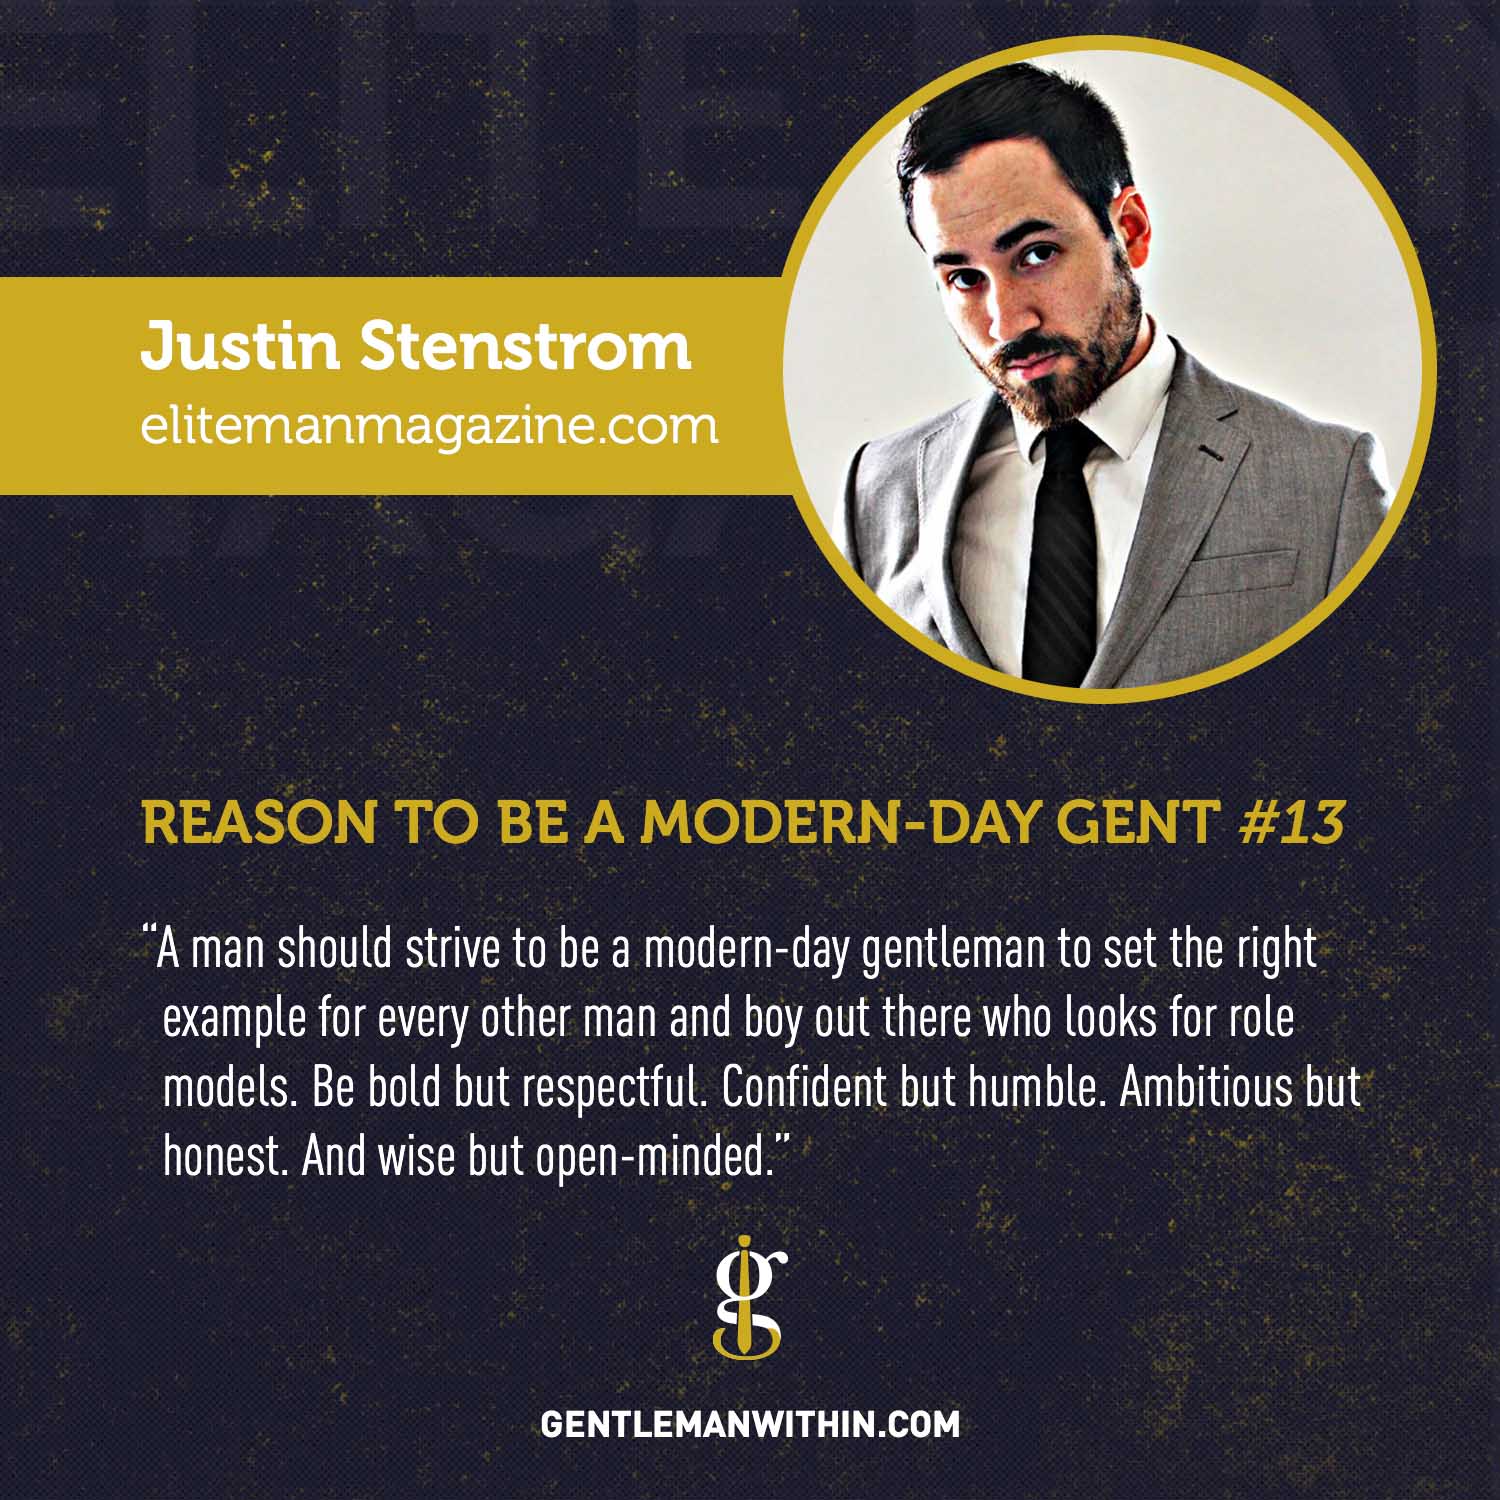 Justin Stenstrom Reason To Be A Modern-Day Gentleman